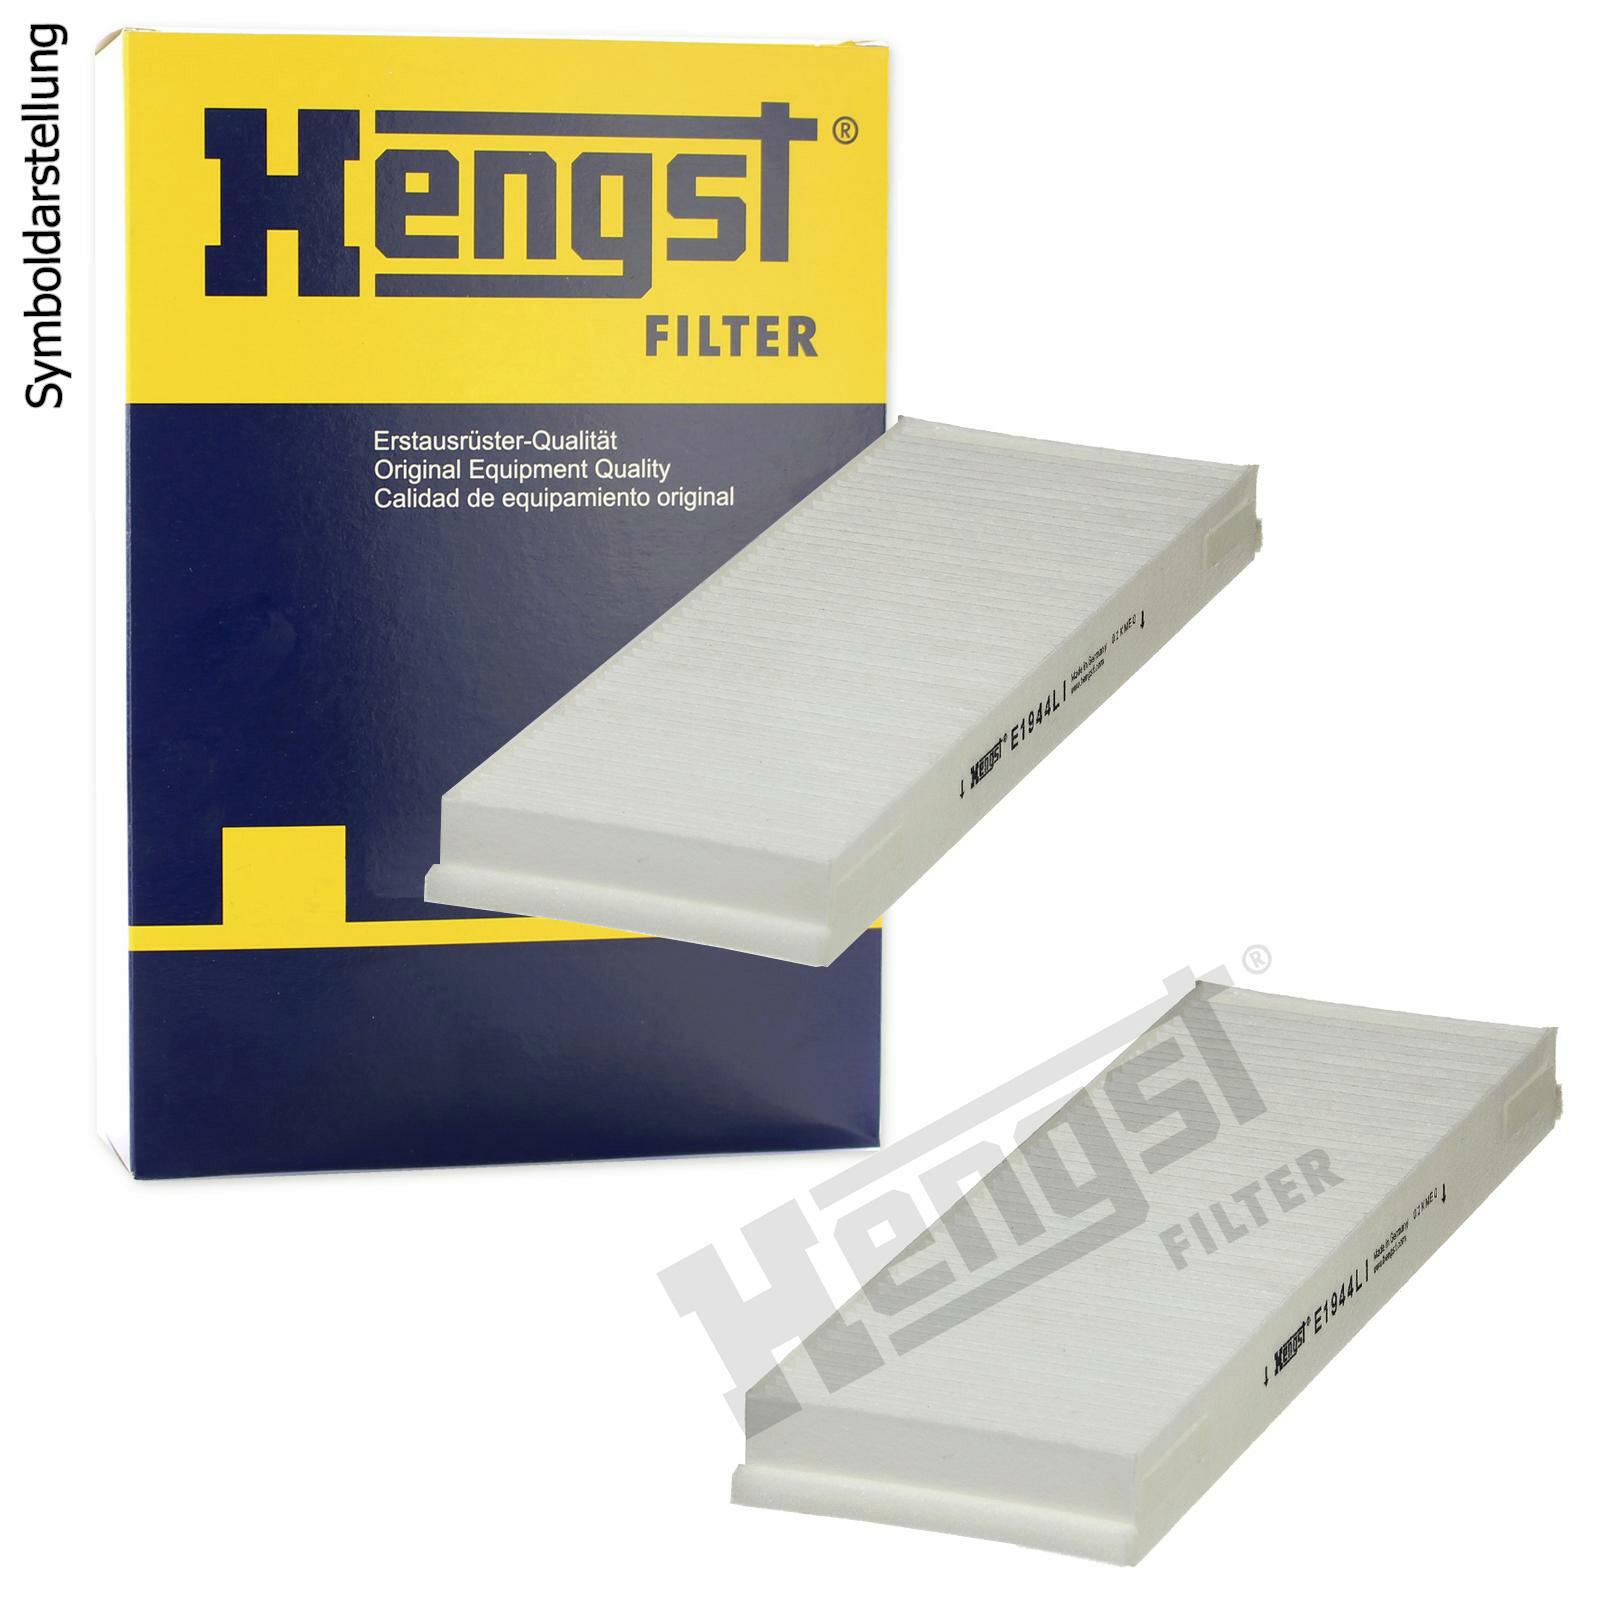 HENGST FILTER Filter, interior air